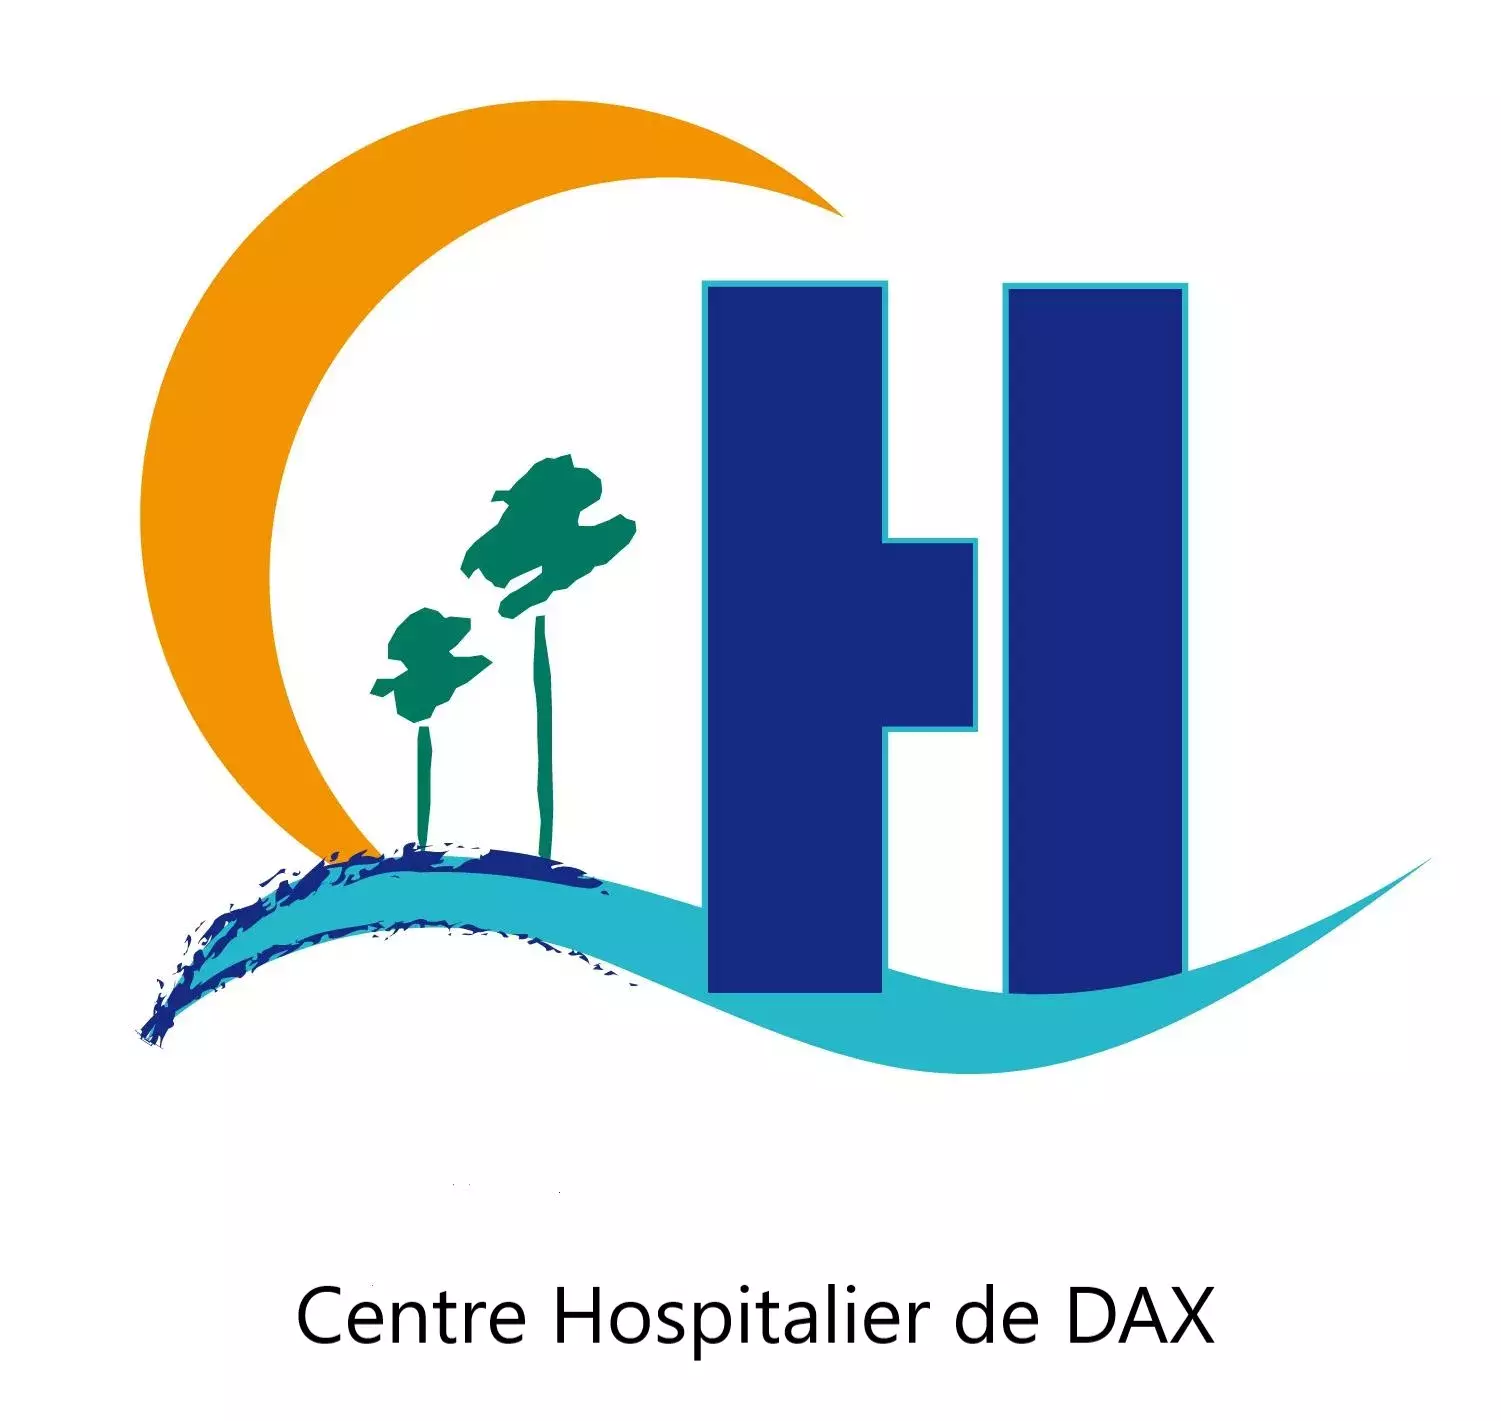 Centre Hospitalier de DAX logo